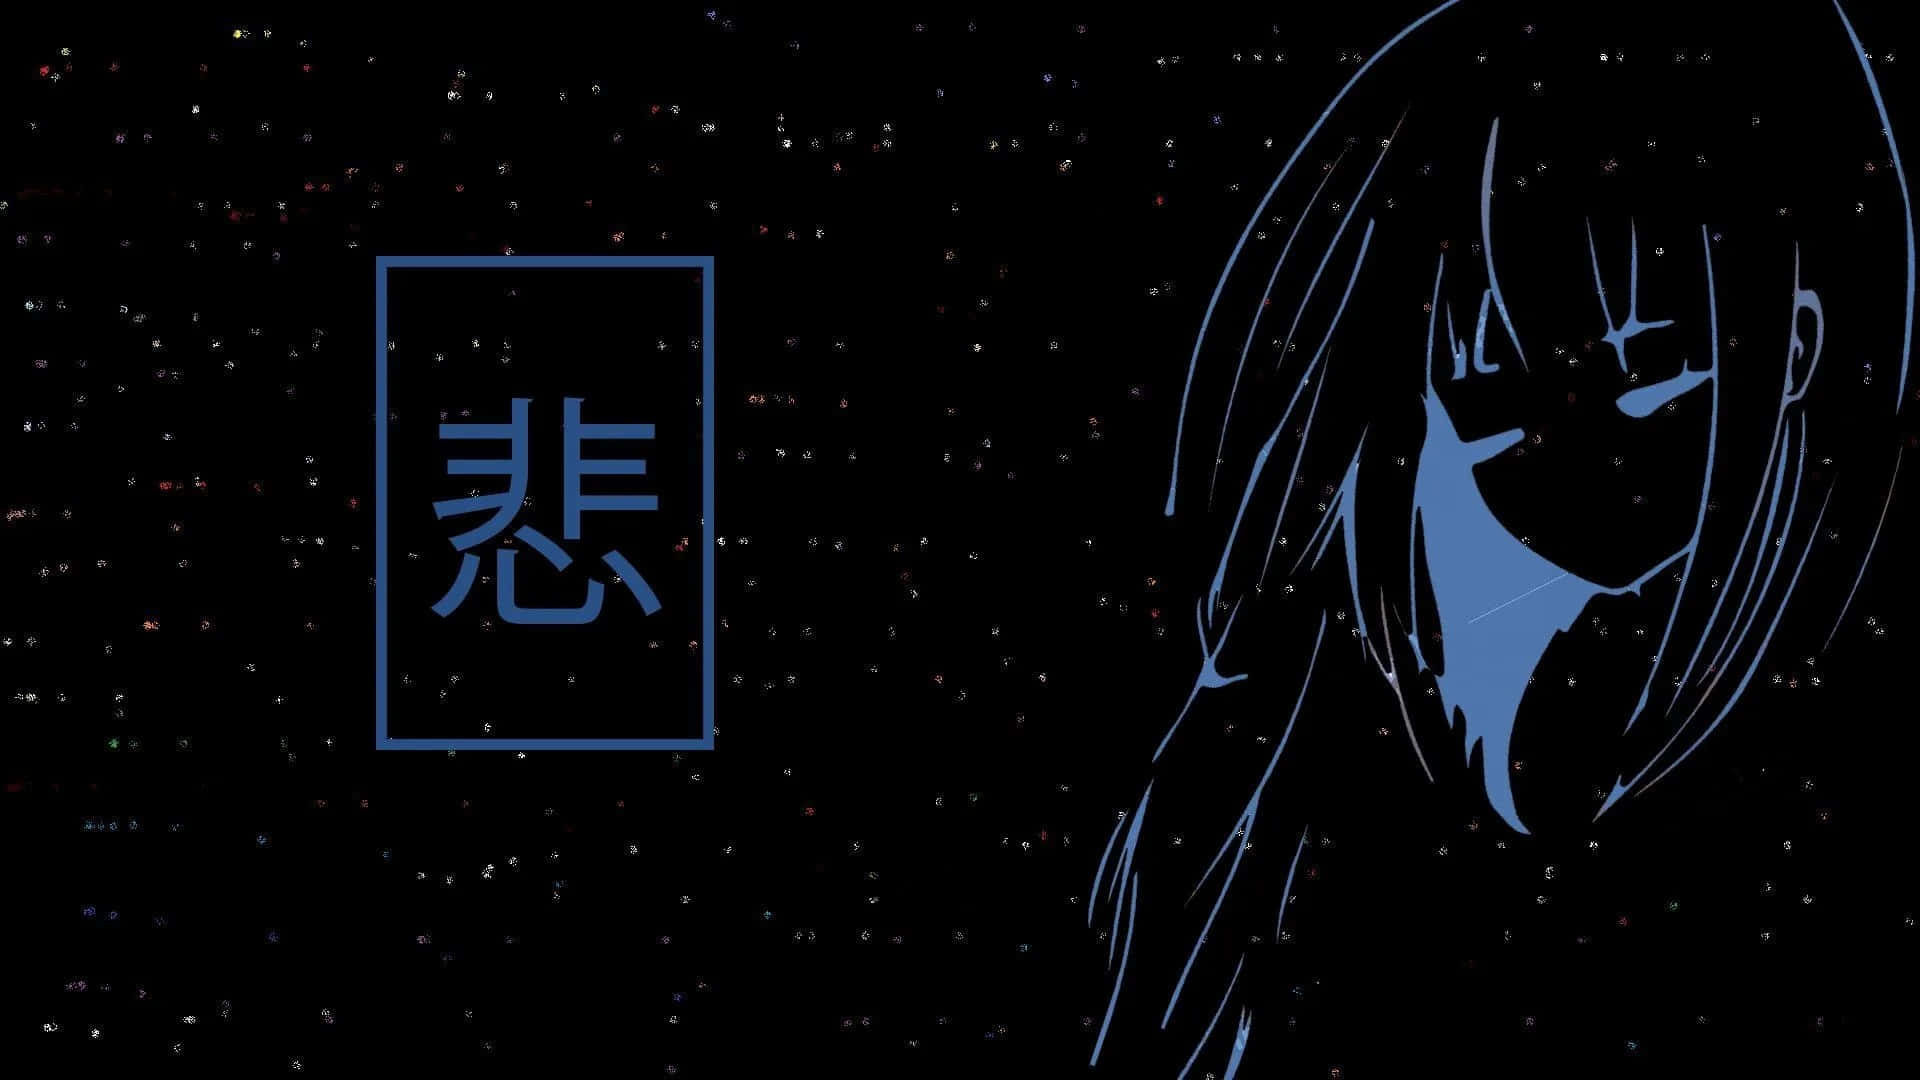 Tauchensie Ein In Eine Futuristische Cyberpunk-welt Mit Diesem Wunderschön Ästhetischen Wallpaper In Schwarz-anime! Wallpaper